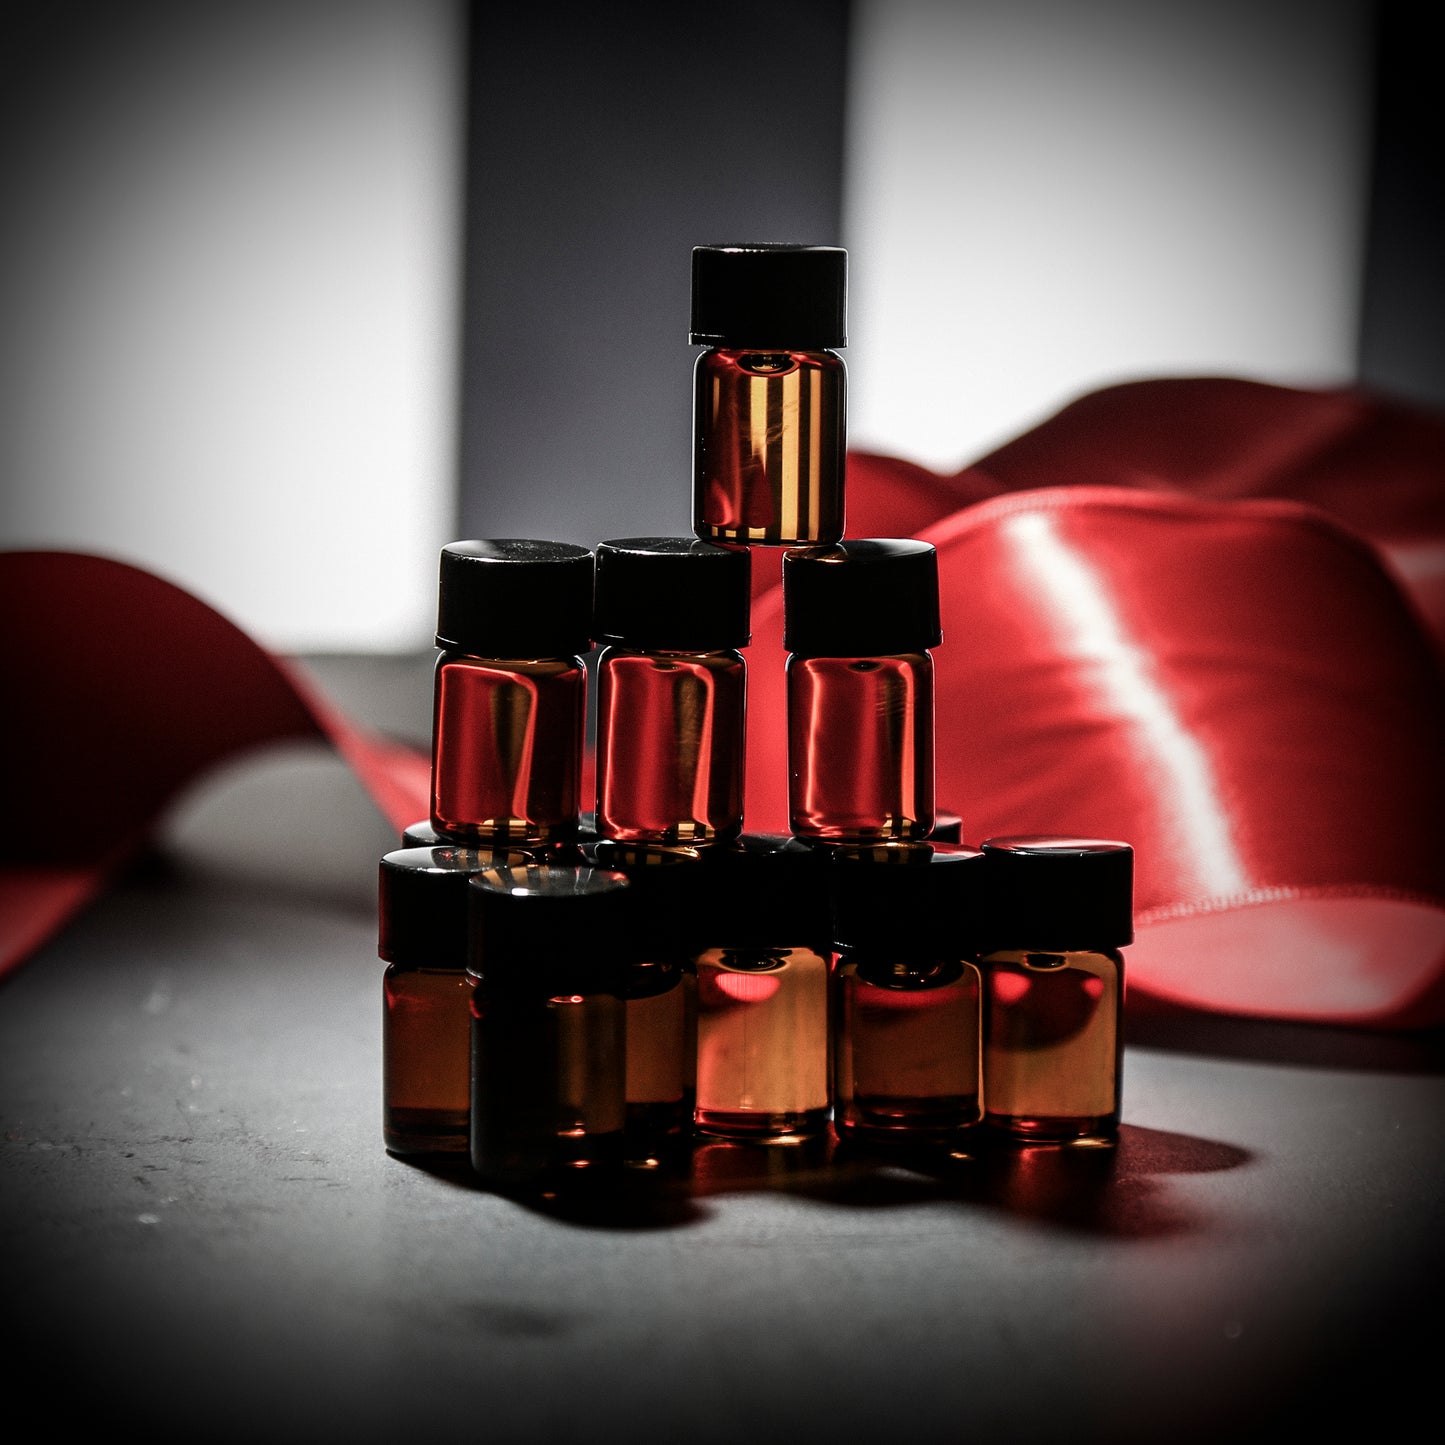 CIRCUS OF DREAMS Perfume Sampler